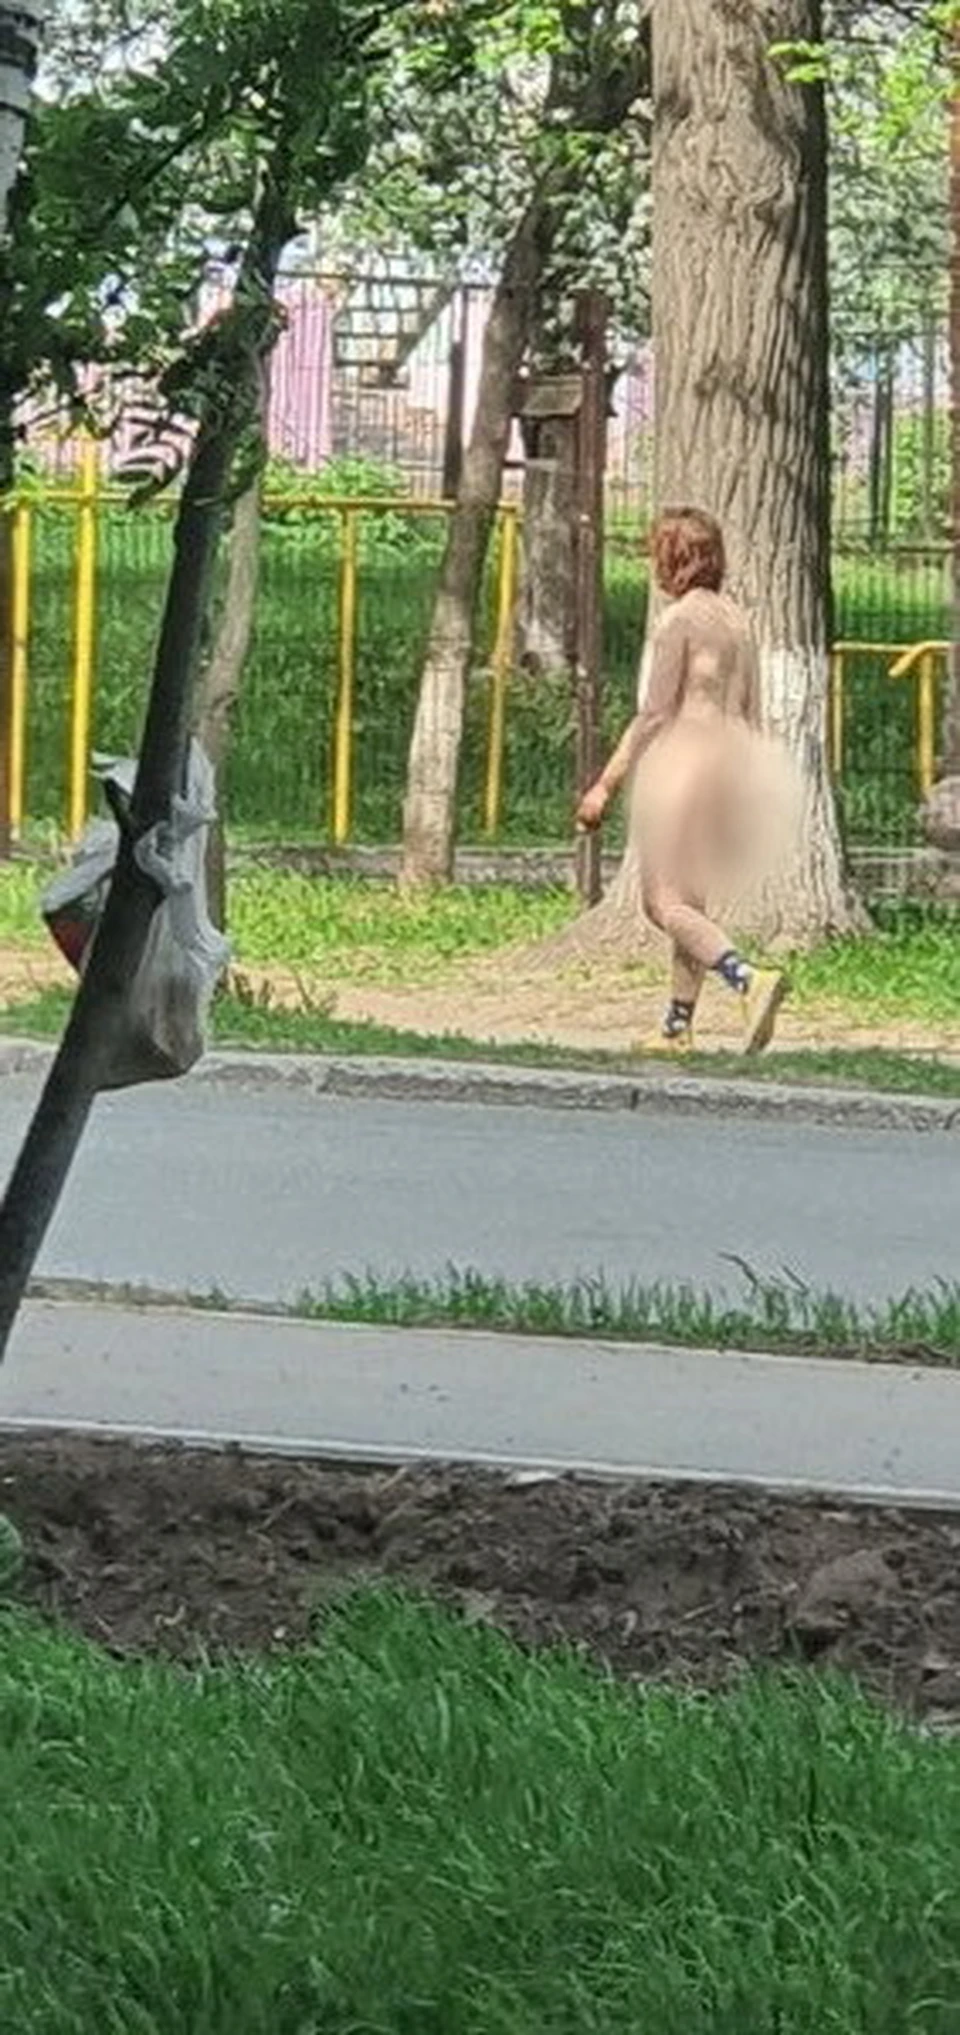 Голую женщину заметили на улице Коммунаров в Ижевске - KP.RU